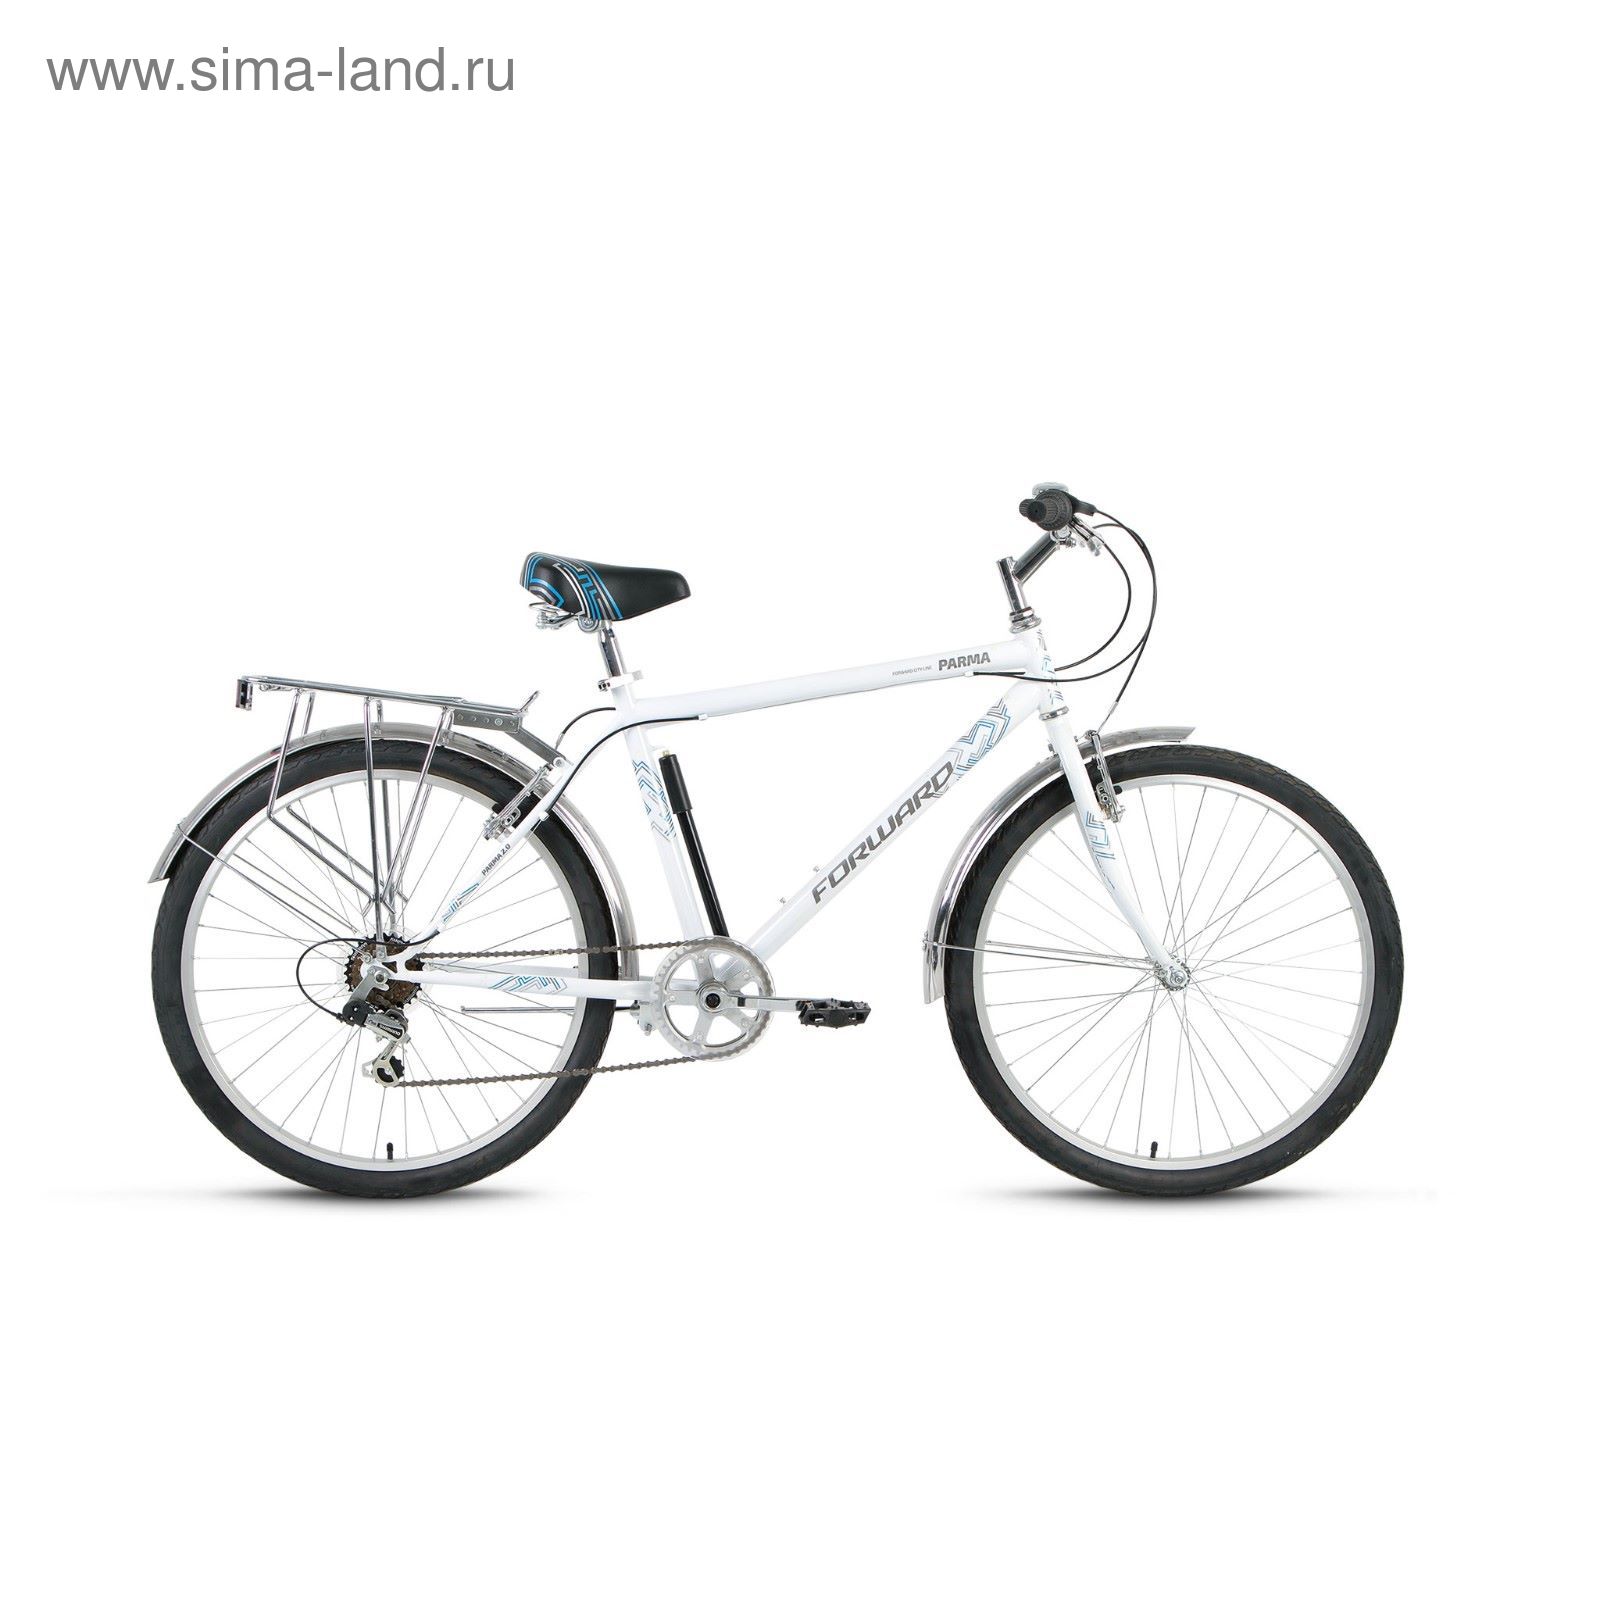 Велосипед 26" Forward Parma 2.0, 2017, цвет белый, размер 18,5"